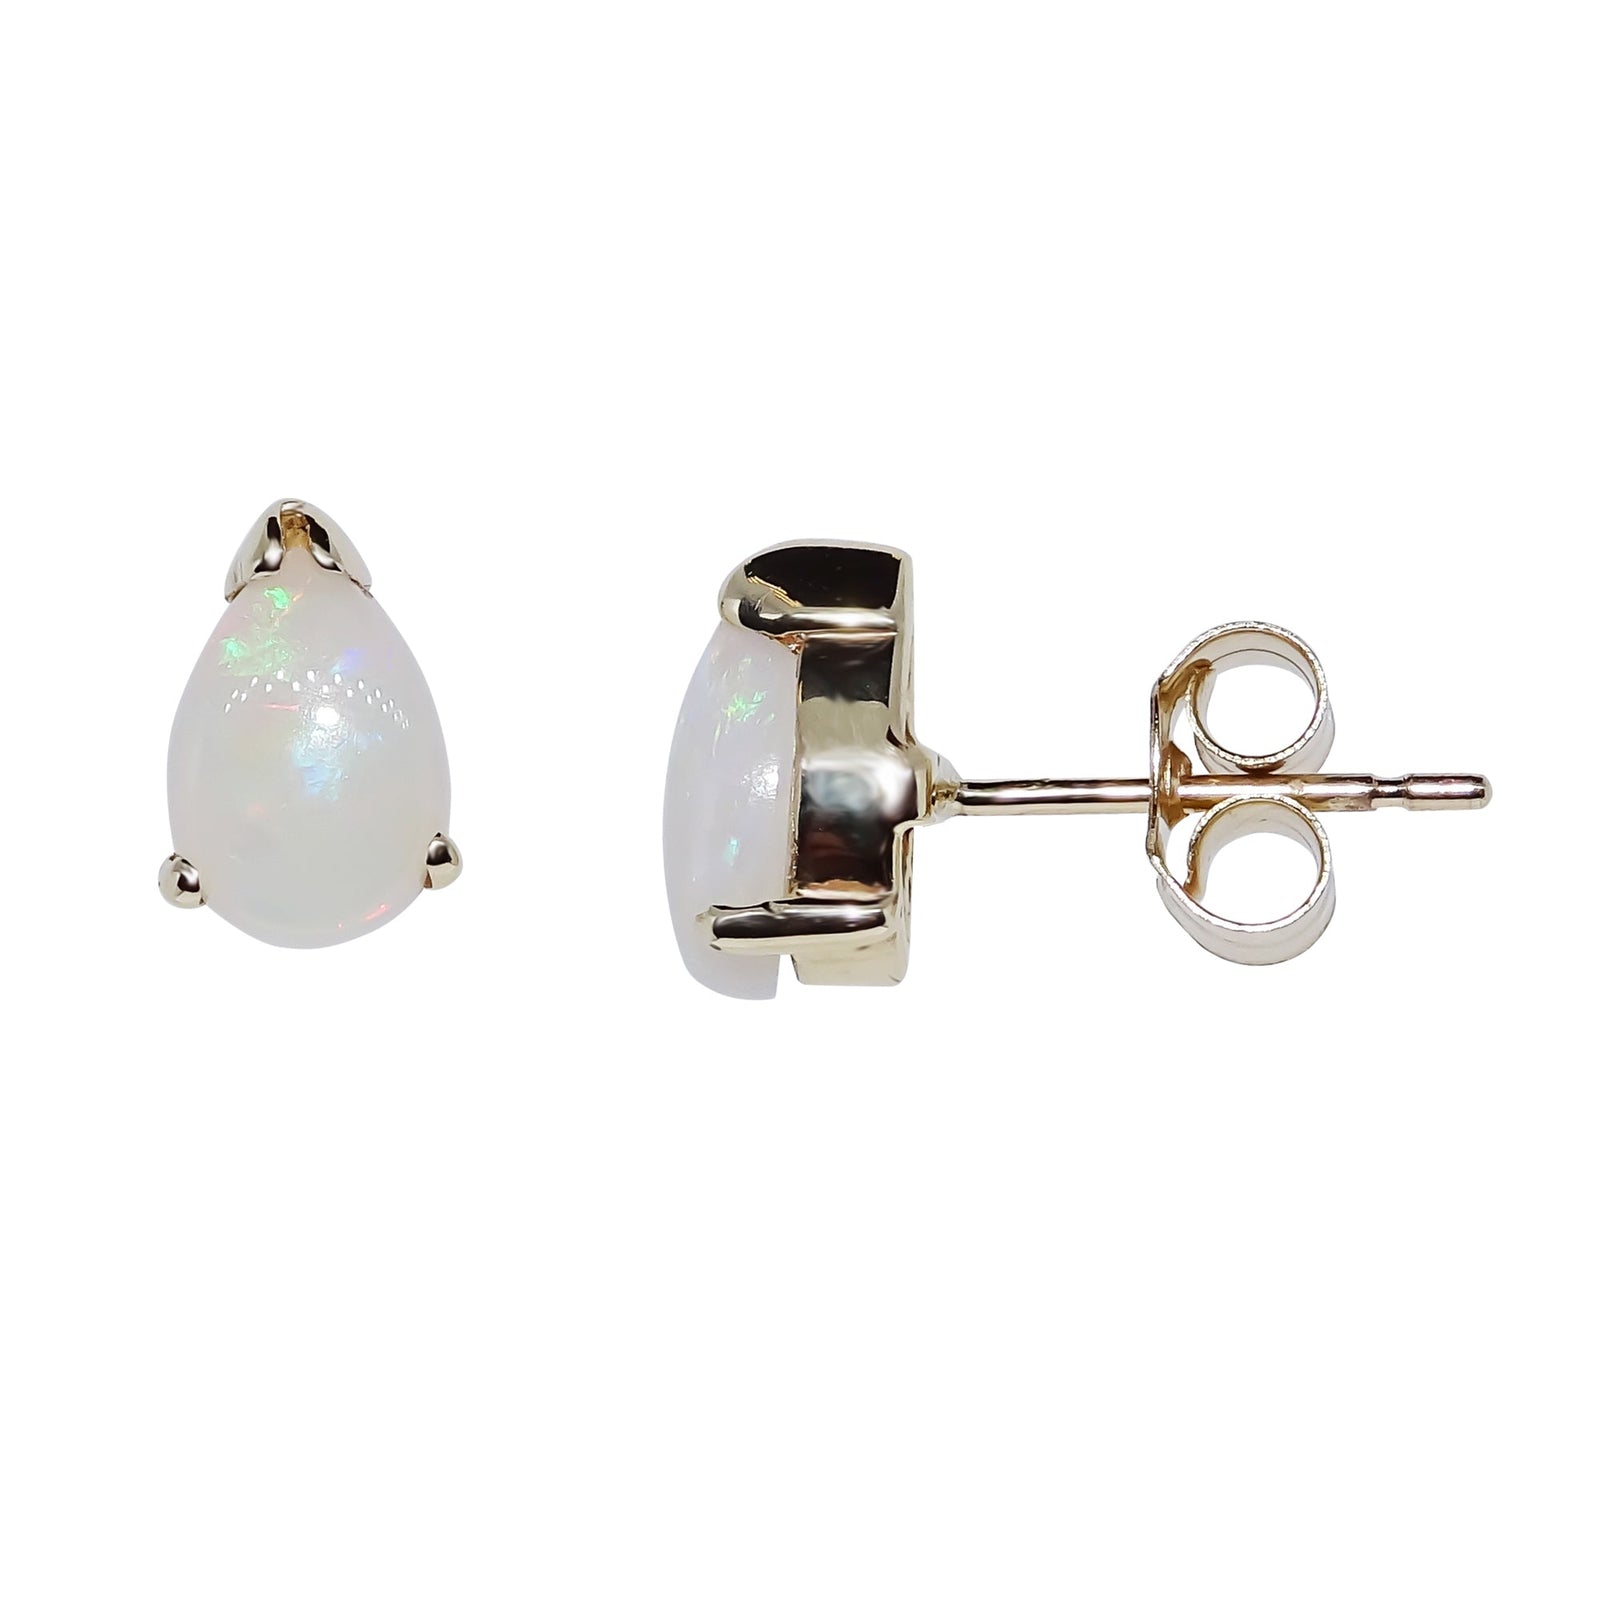 9ct gold 7x5 mm pear shape opal stud earrings